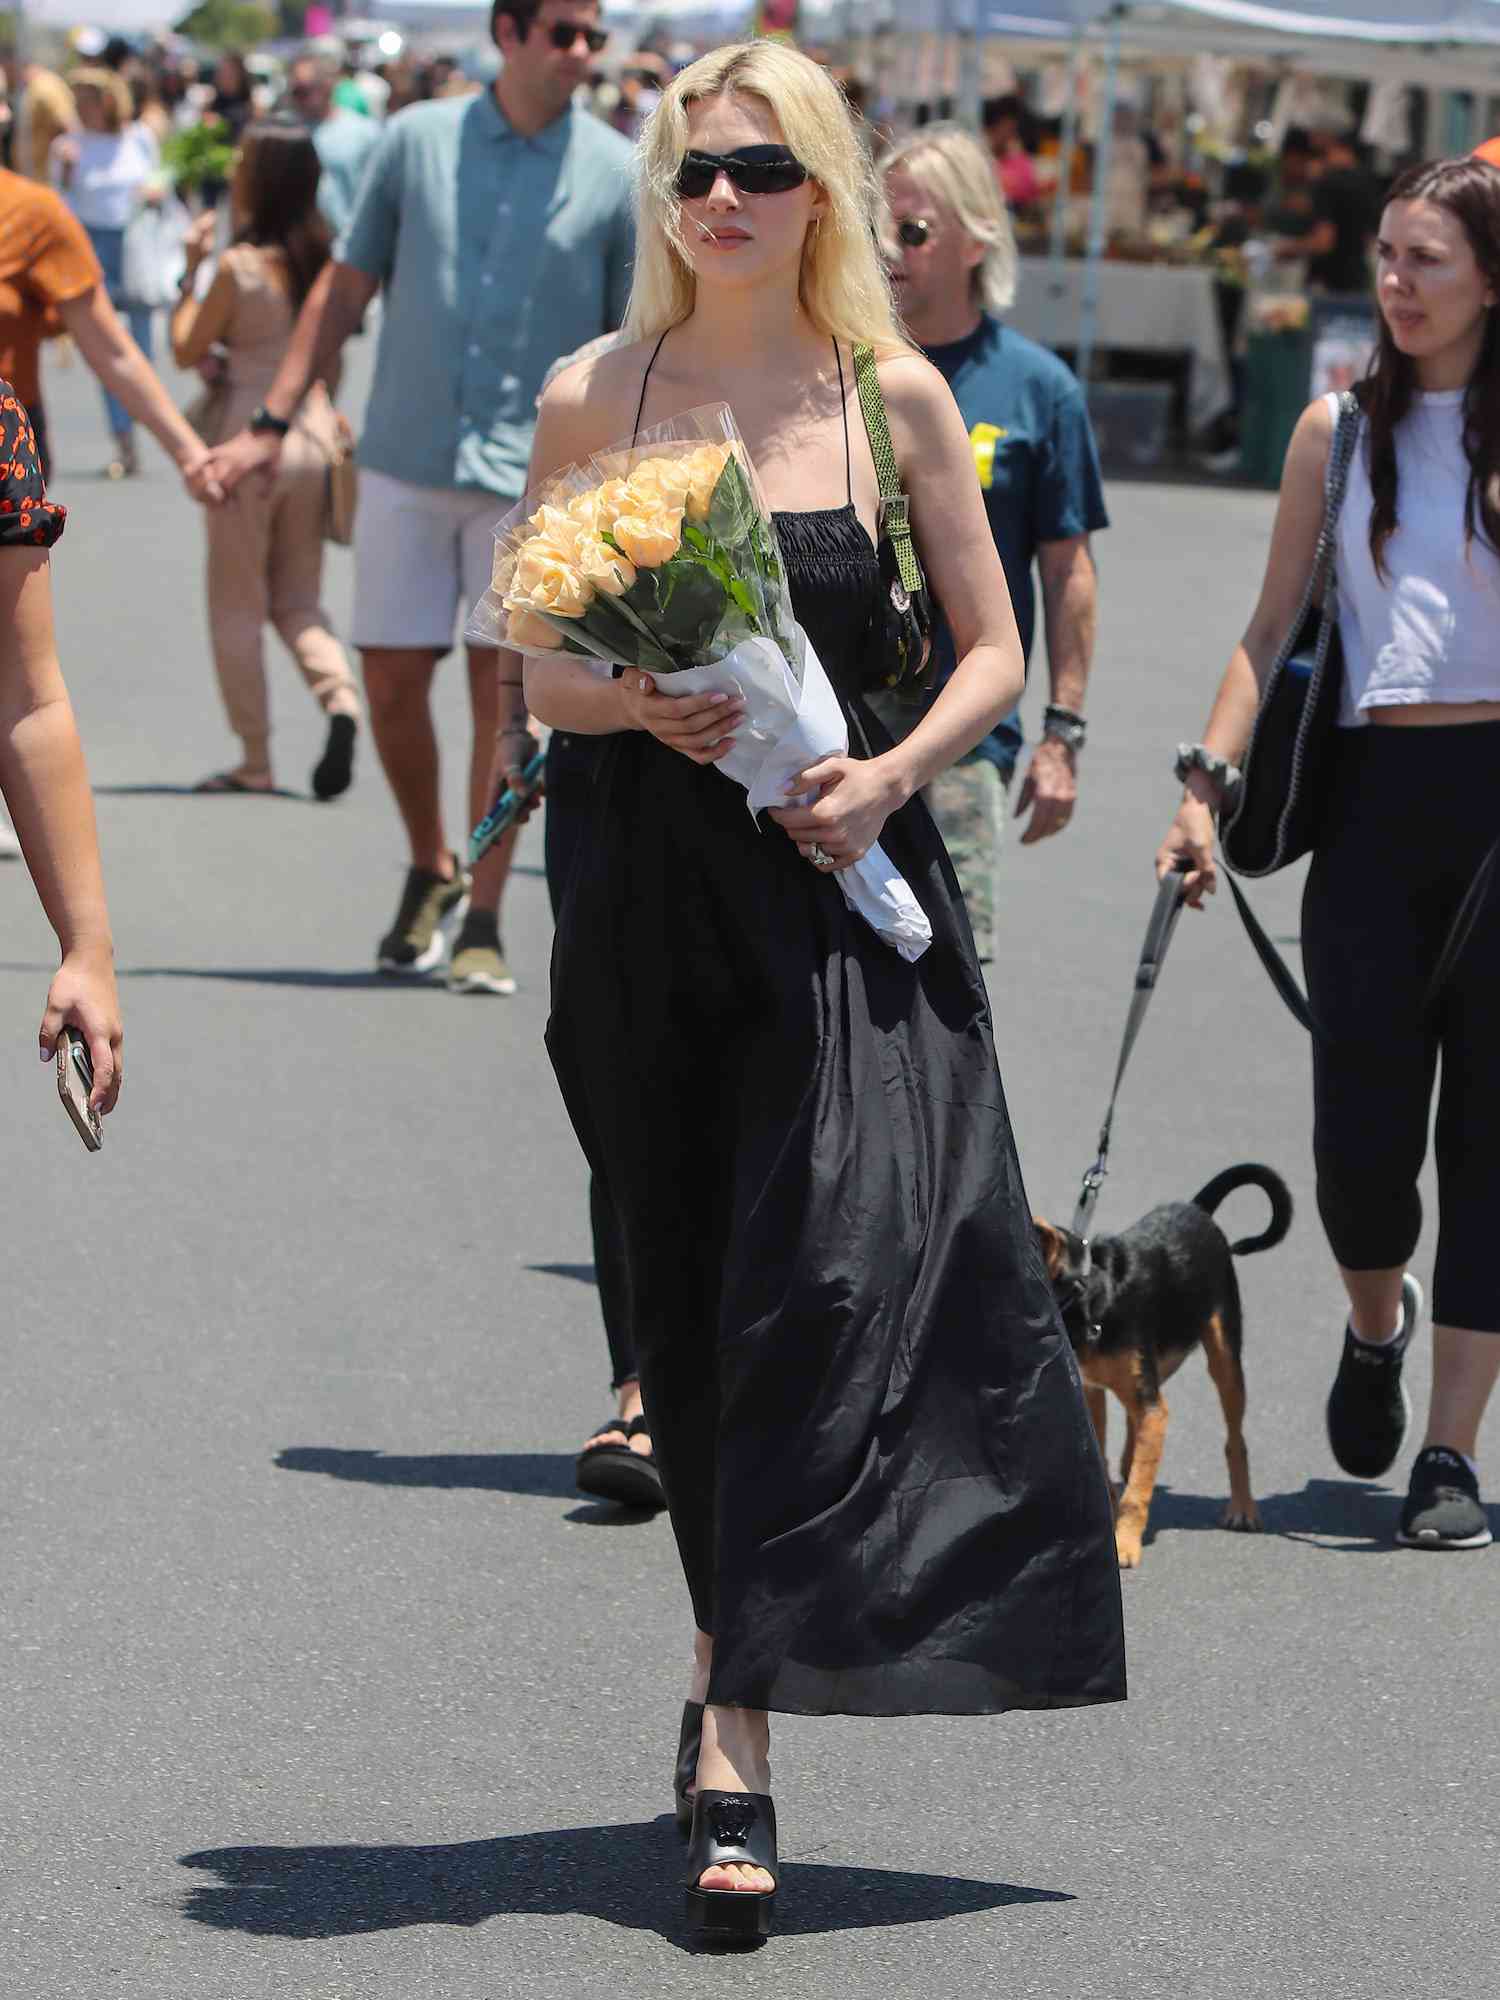 尼古拉·佩尔茨·贝克汉姆穿着黑色及地长裙、凉鞋和太阳镜来到洛杉矶农贸市场